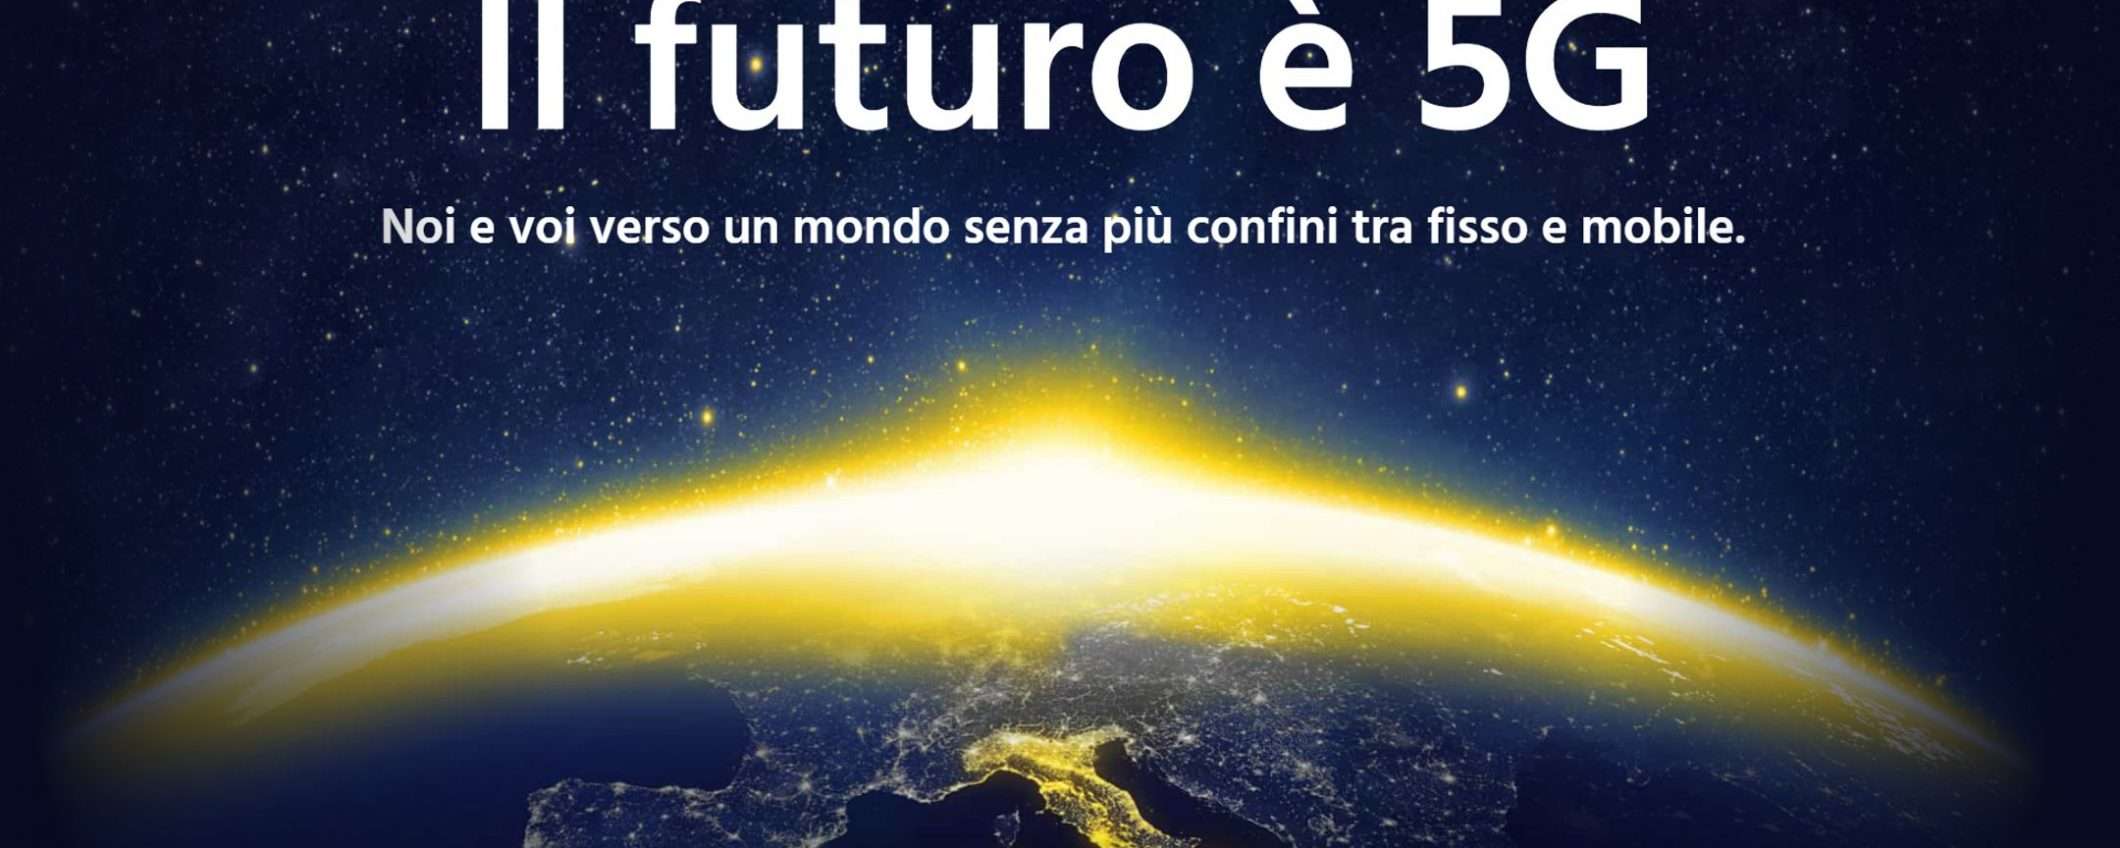 Il futuro è 5G: l'ebook di Fastweb e Altroconsumo